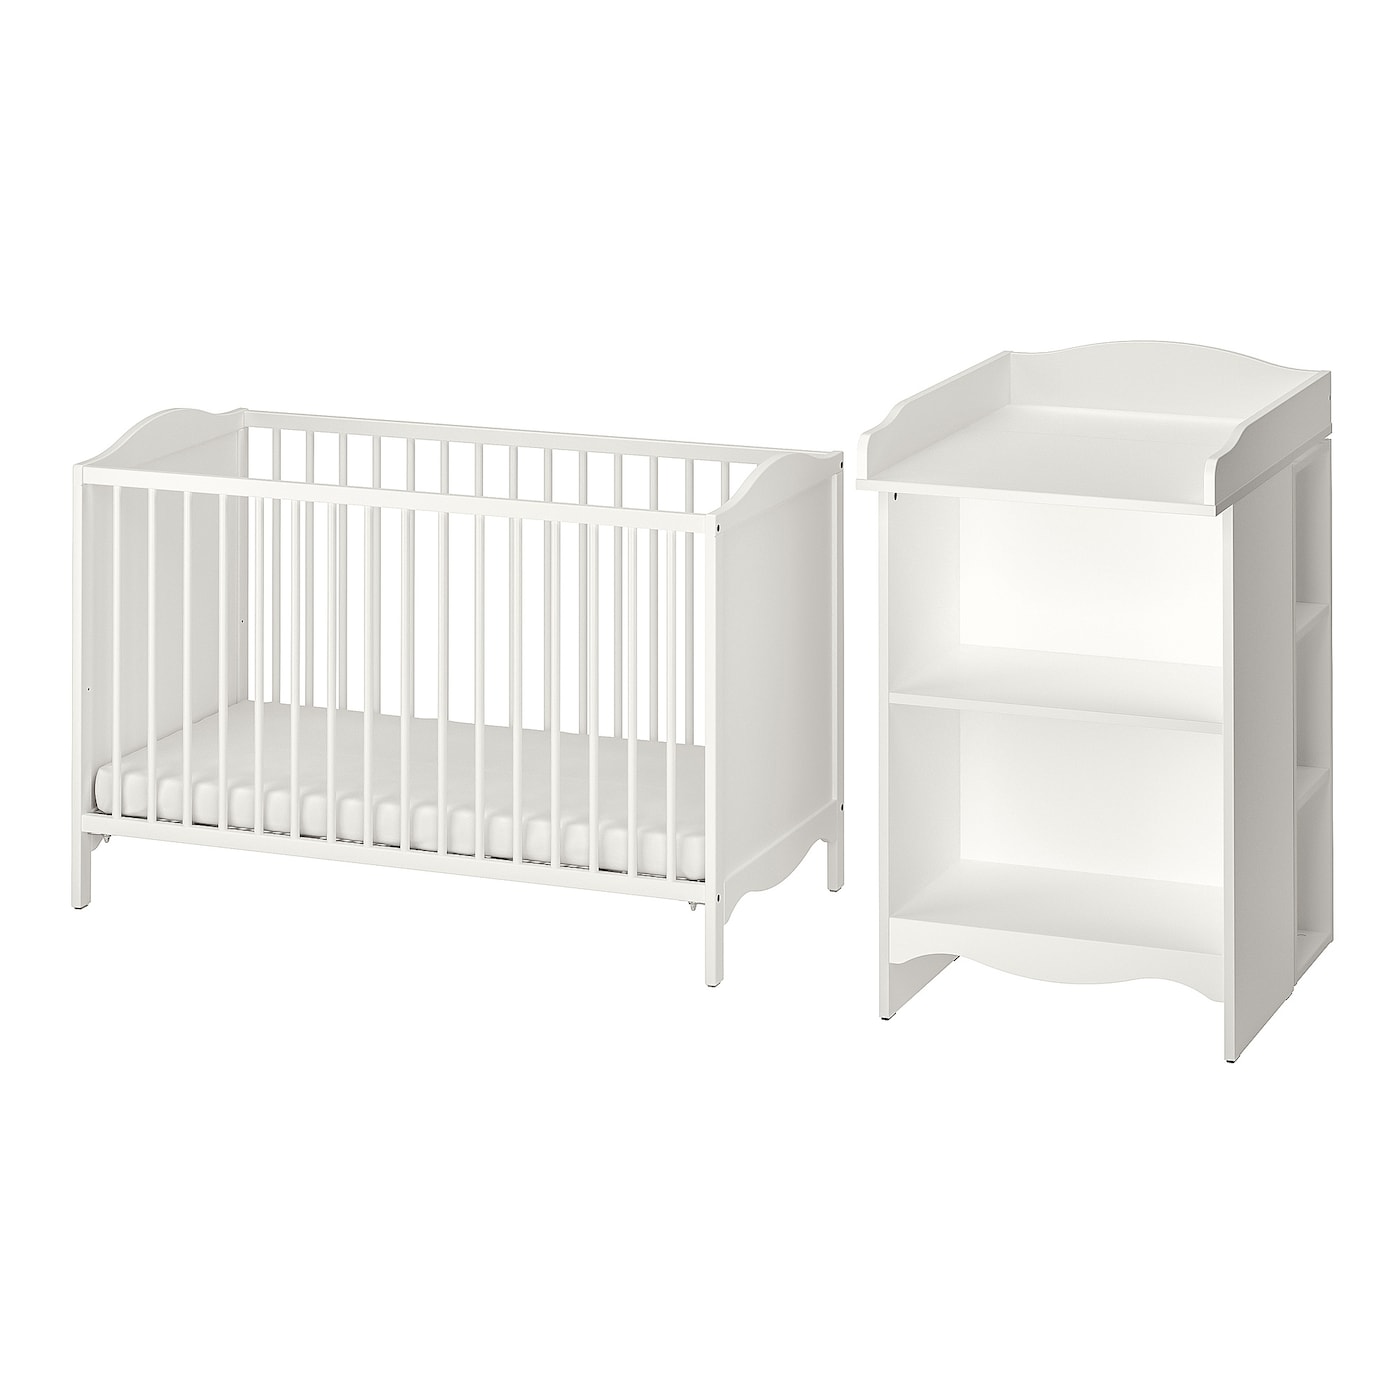 Комплект детской мебели из 2 предметов - IKEA SMÅGÖRA/SMAGORA, 120x60см, белый, СМОГЁРА ИКЕА